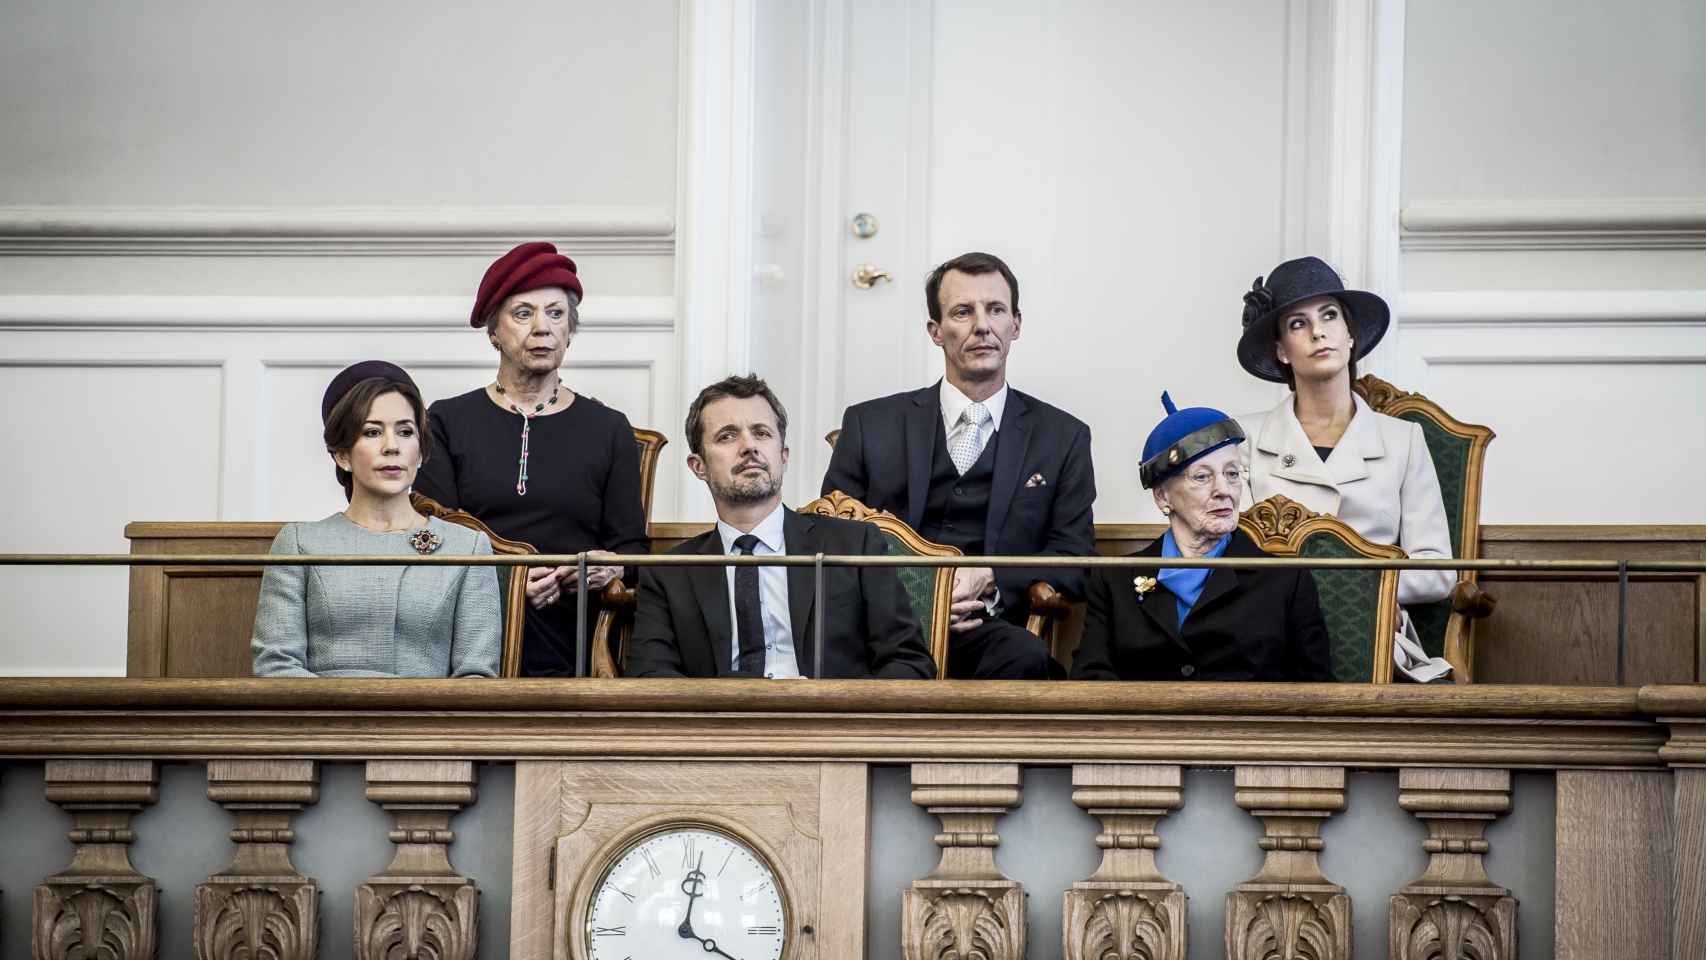 La princesa Benedicta junto a su hermana y sus sobrinos en el Parlamento.